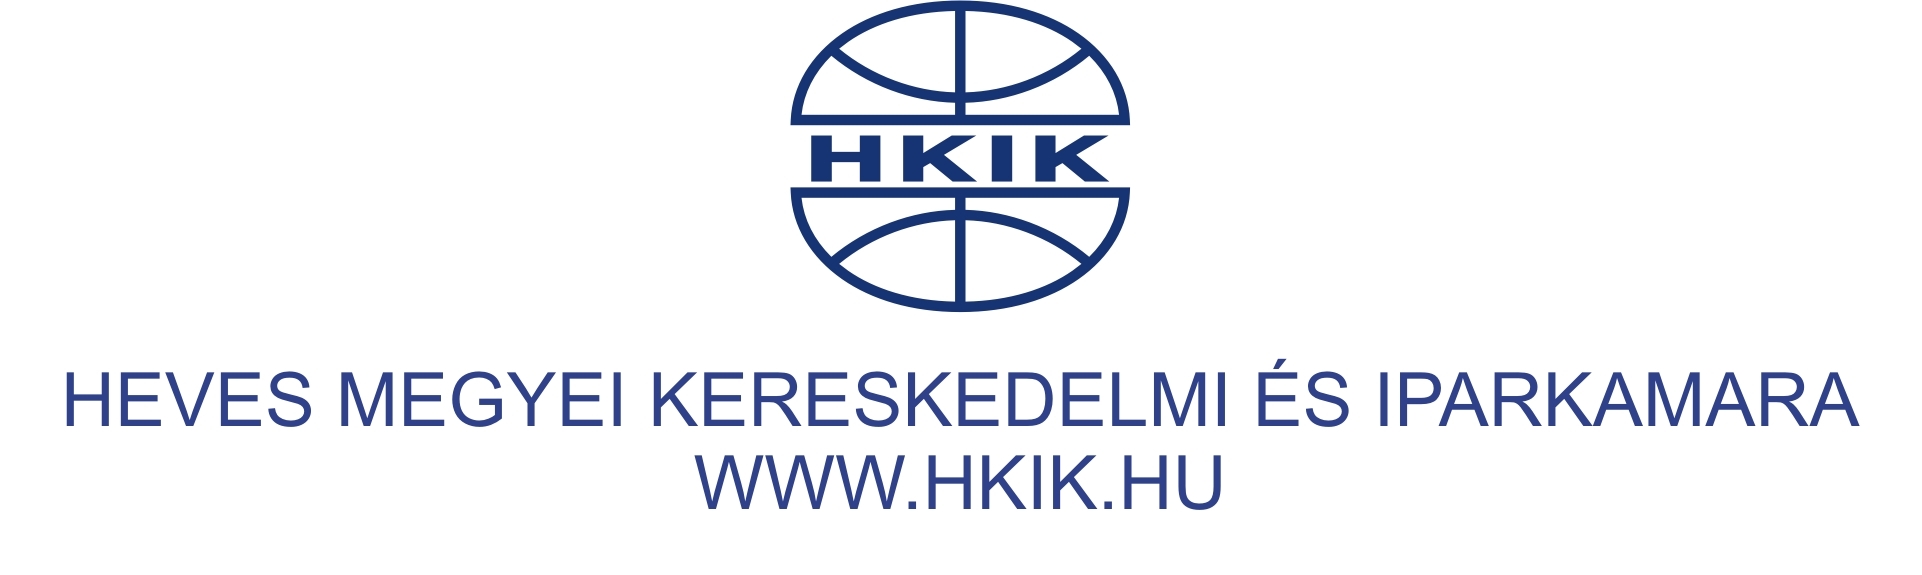 hkik_webes_logo_4.jpg